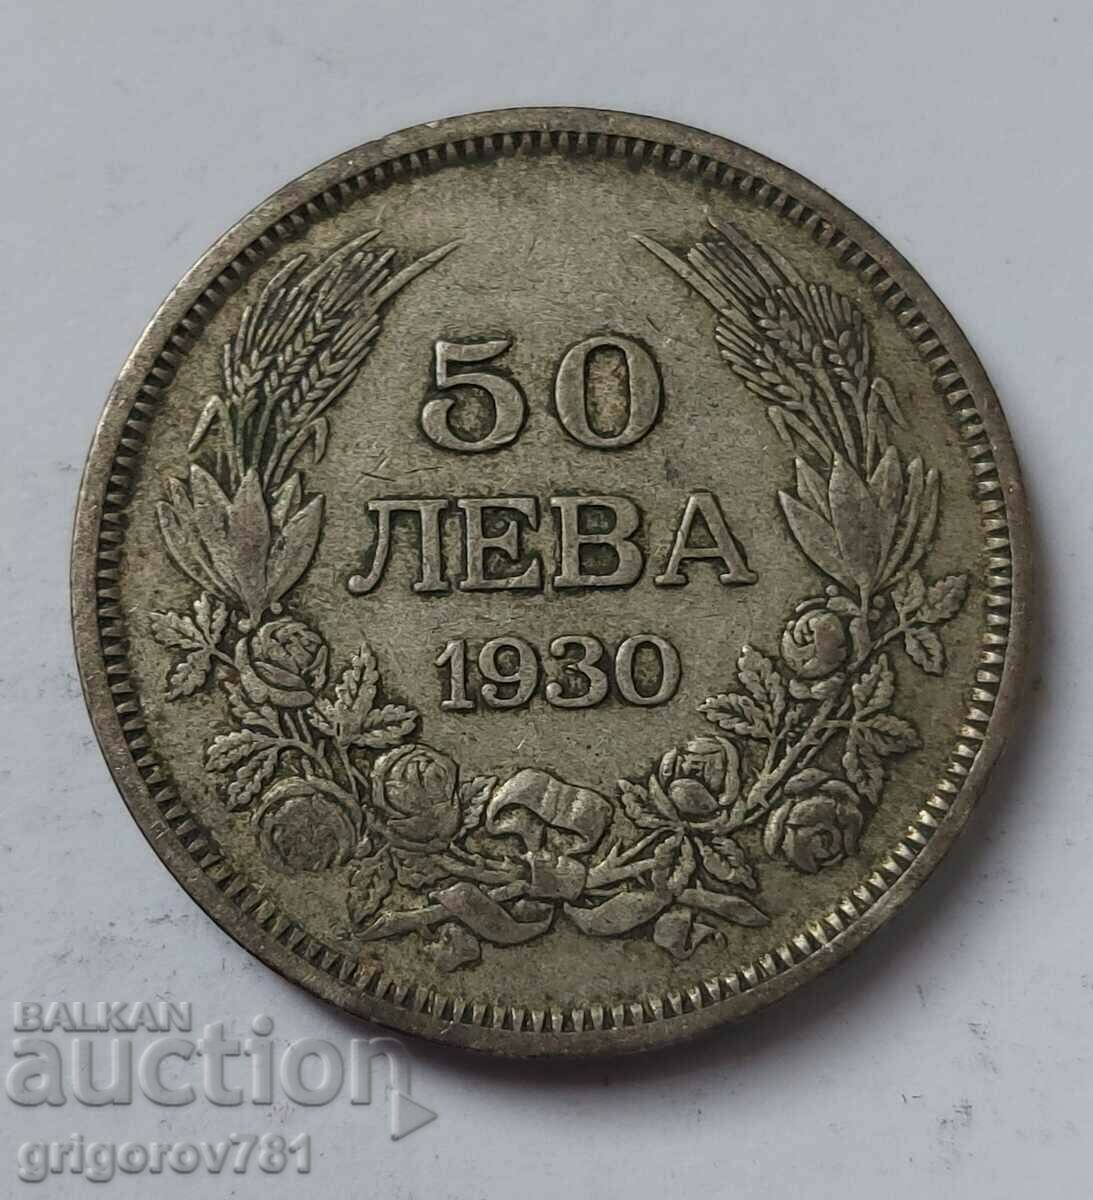 50 leva silver Bulgaria 1930 - silver coin #53